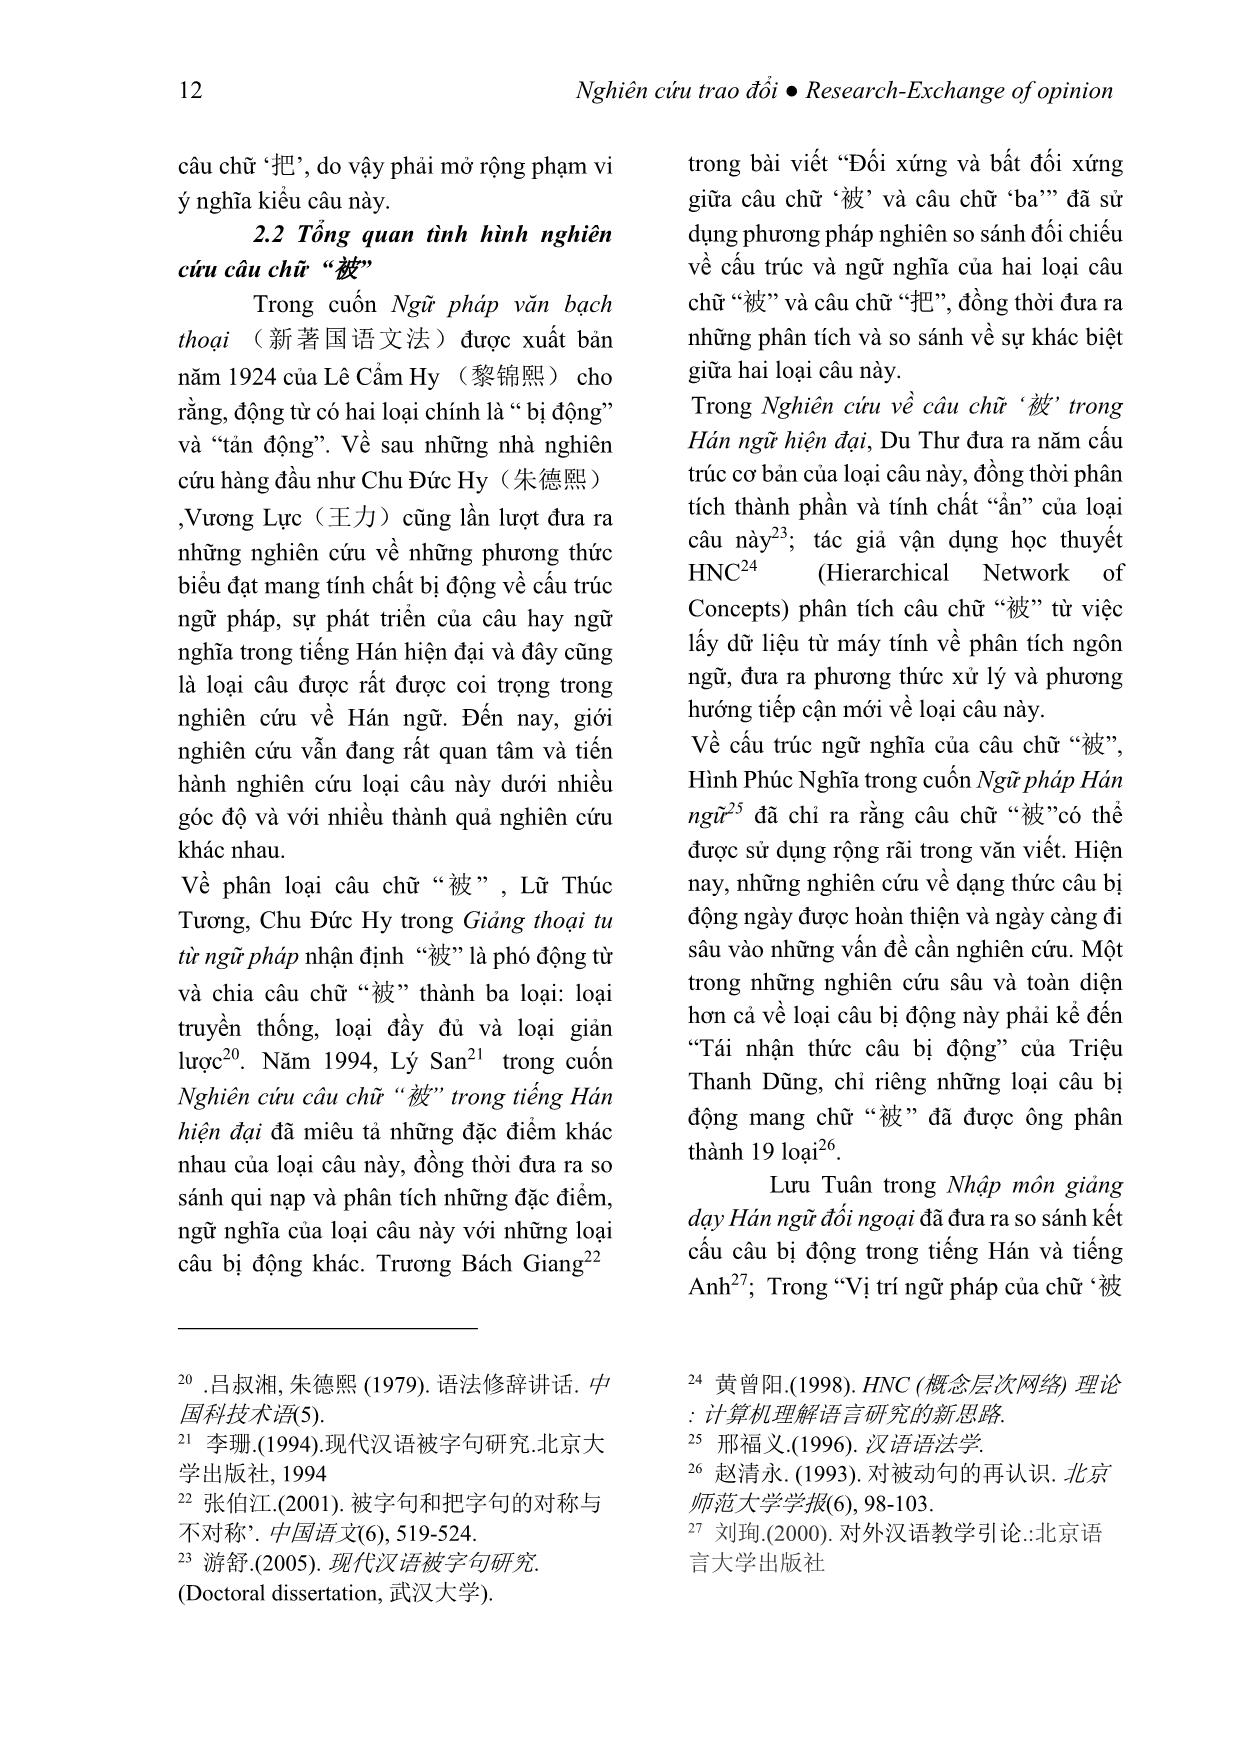 Tình hình nghiên cứu các kiểu câu đặc biệt trong tiếng Trung Quốc tại Trung Quốc trang 4